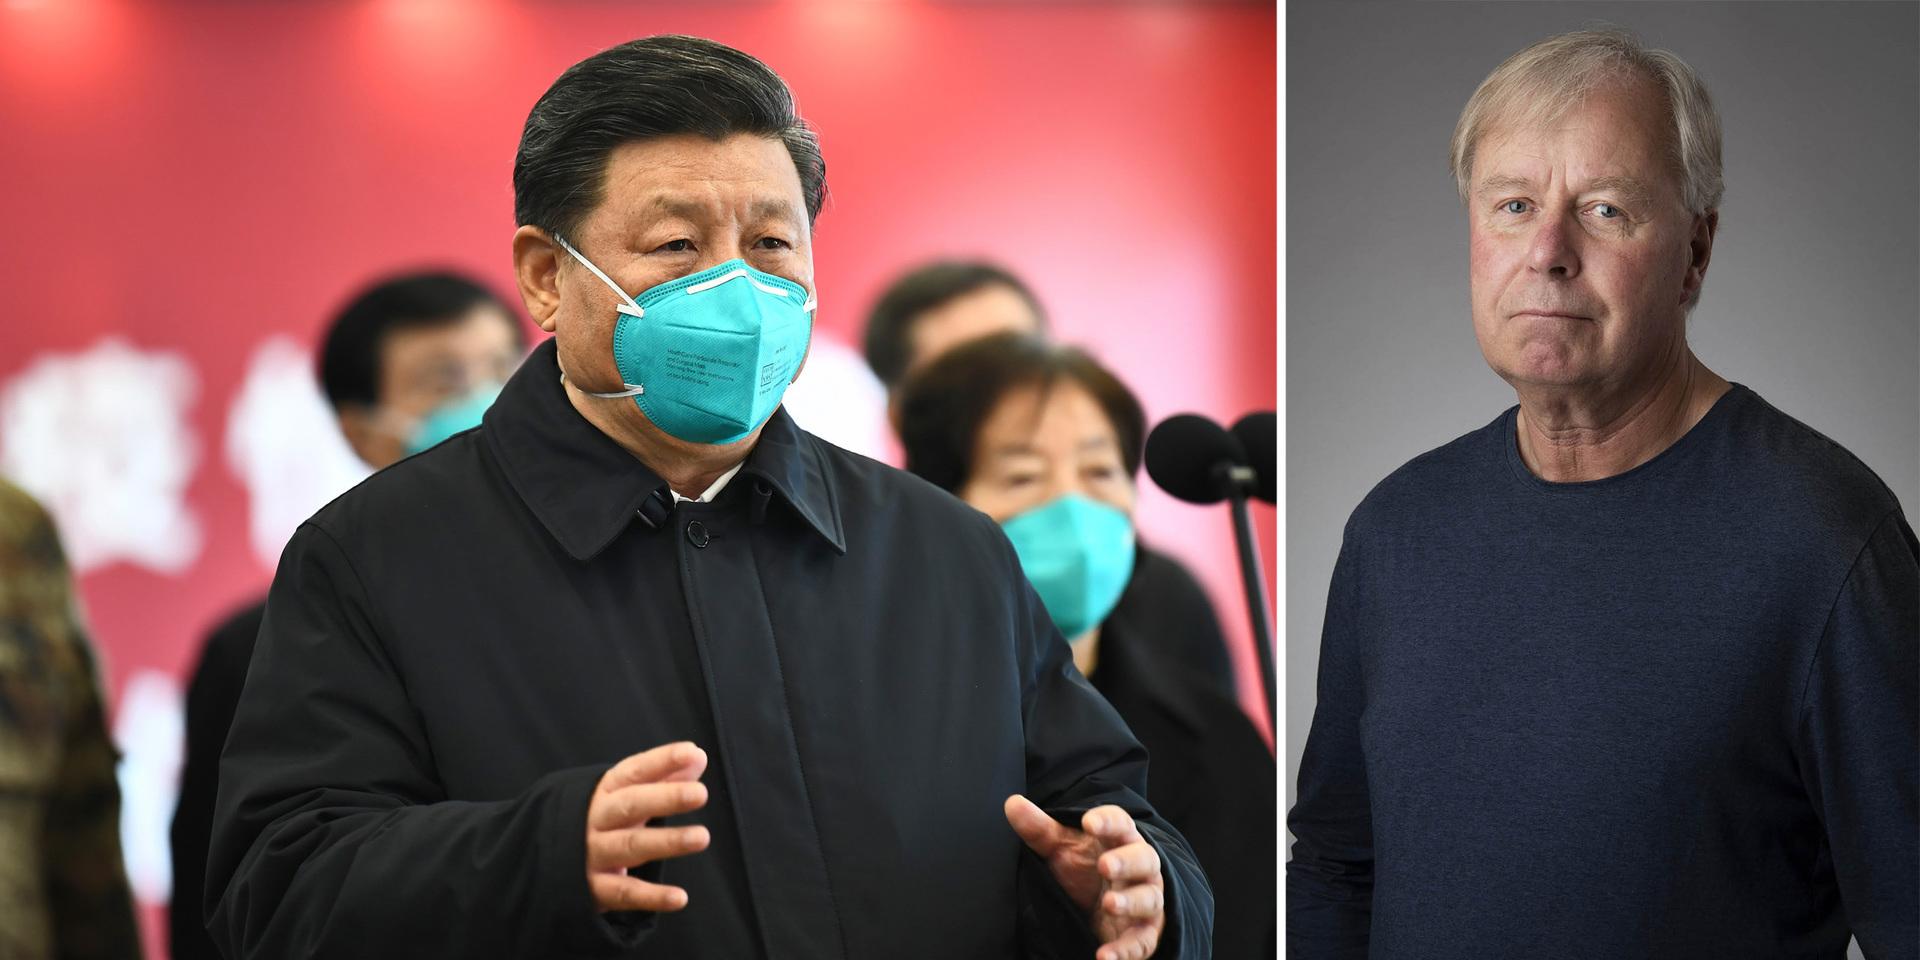 Xi Jinping är en vän, enligt Donald Trump, men anklagar Kina för smittspridningen. Trappas ordstriden upp kan det få militära följder.